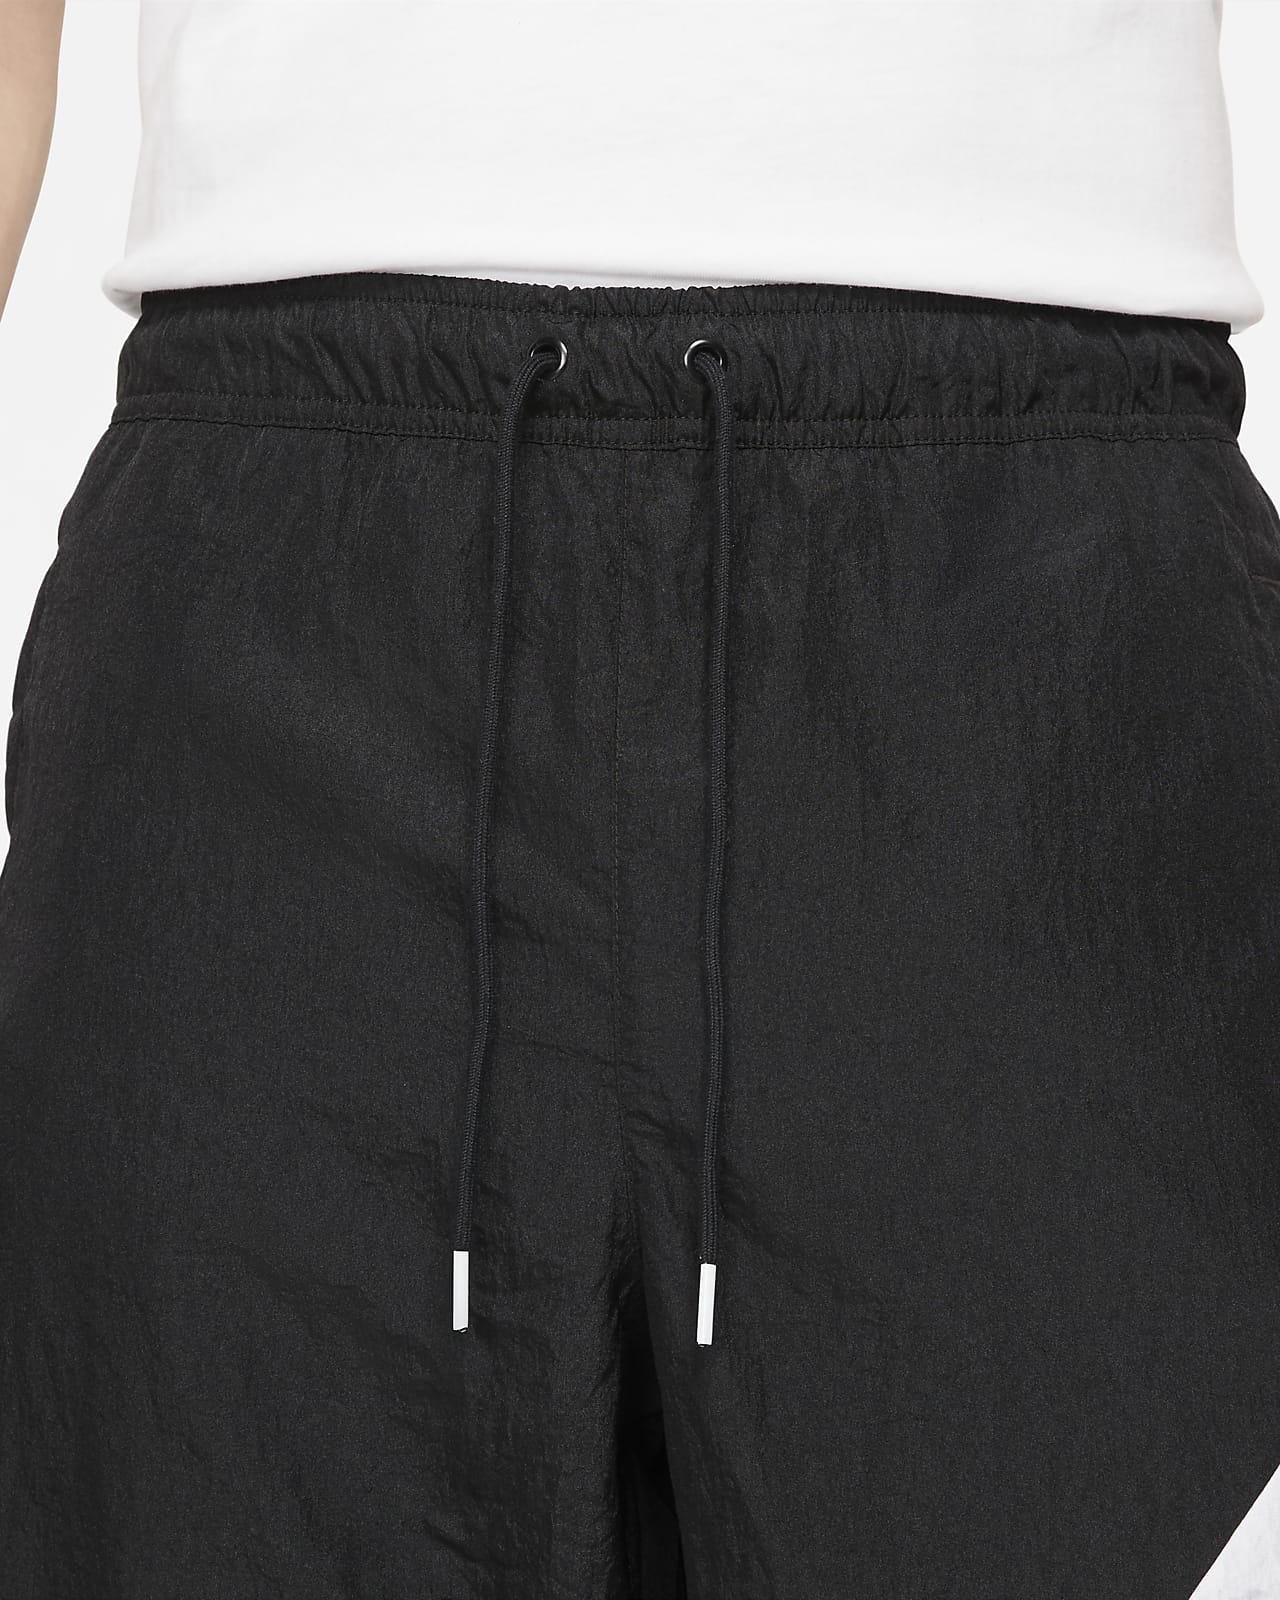 Nike Sportswear Swoosh Men's Woven Lined Trousers. Nike HR